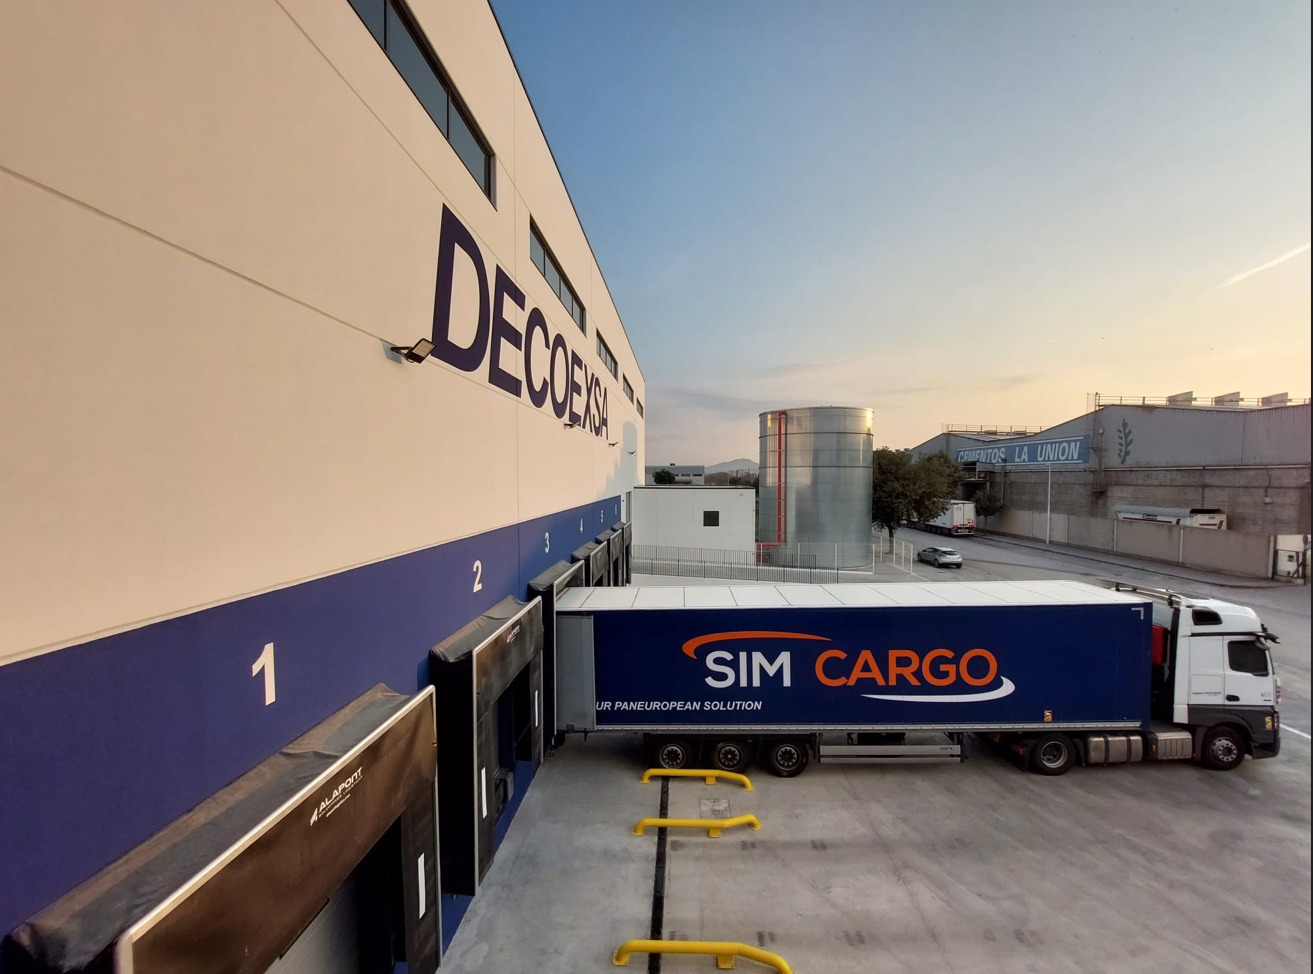 Decoexsa-camiones, logística por carretera, transporte rodado. SIM Cargo